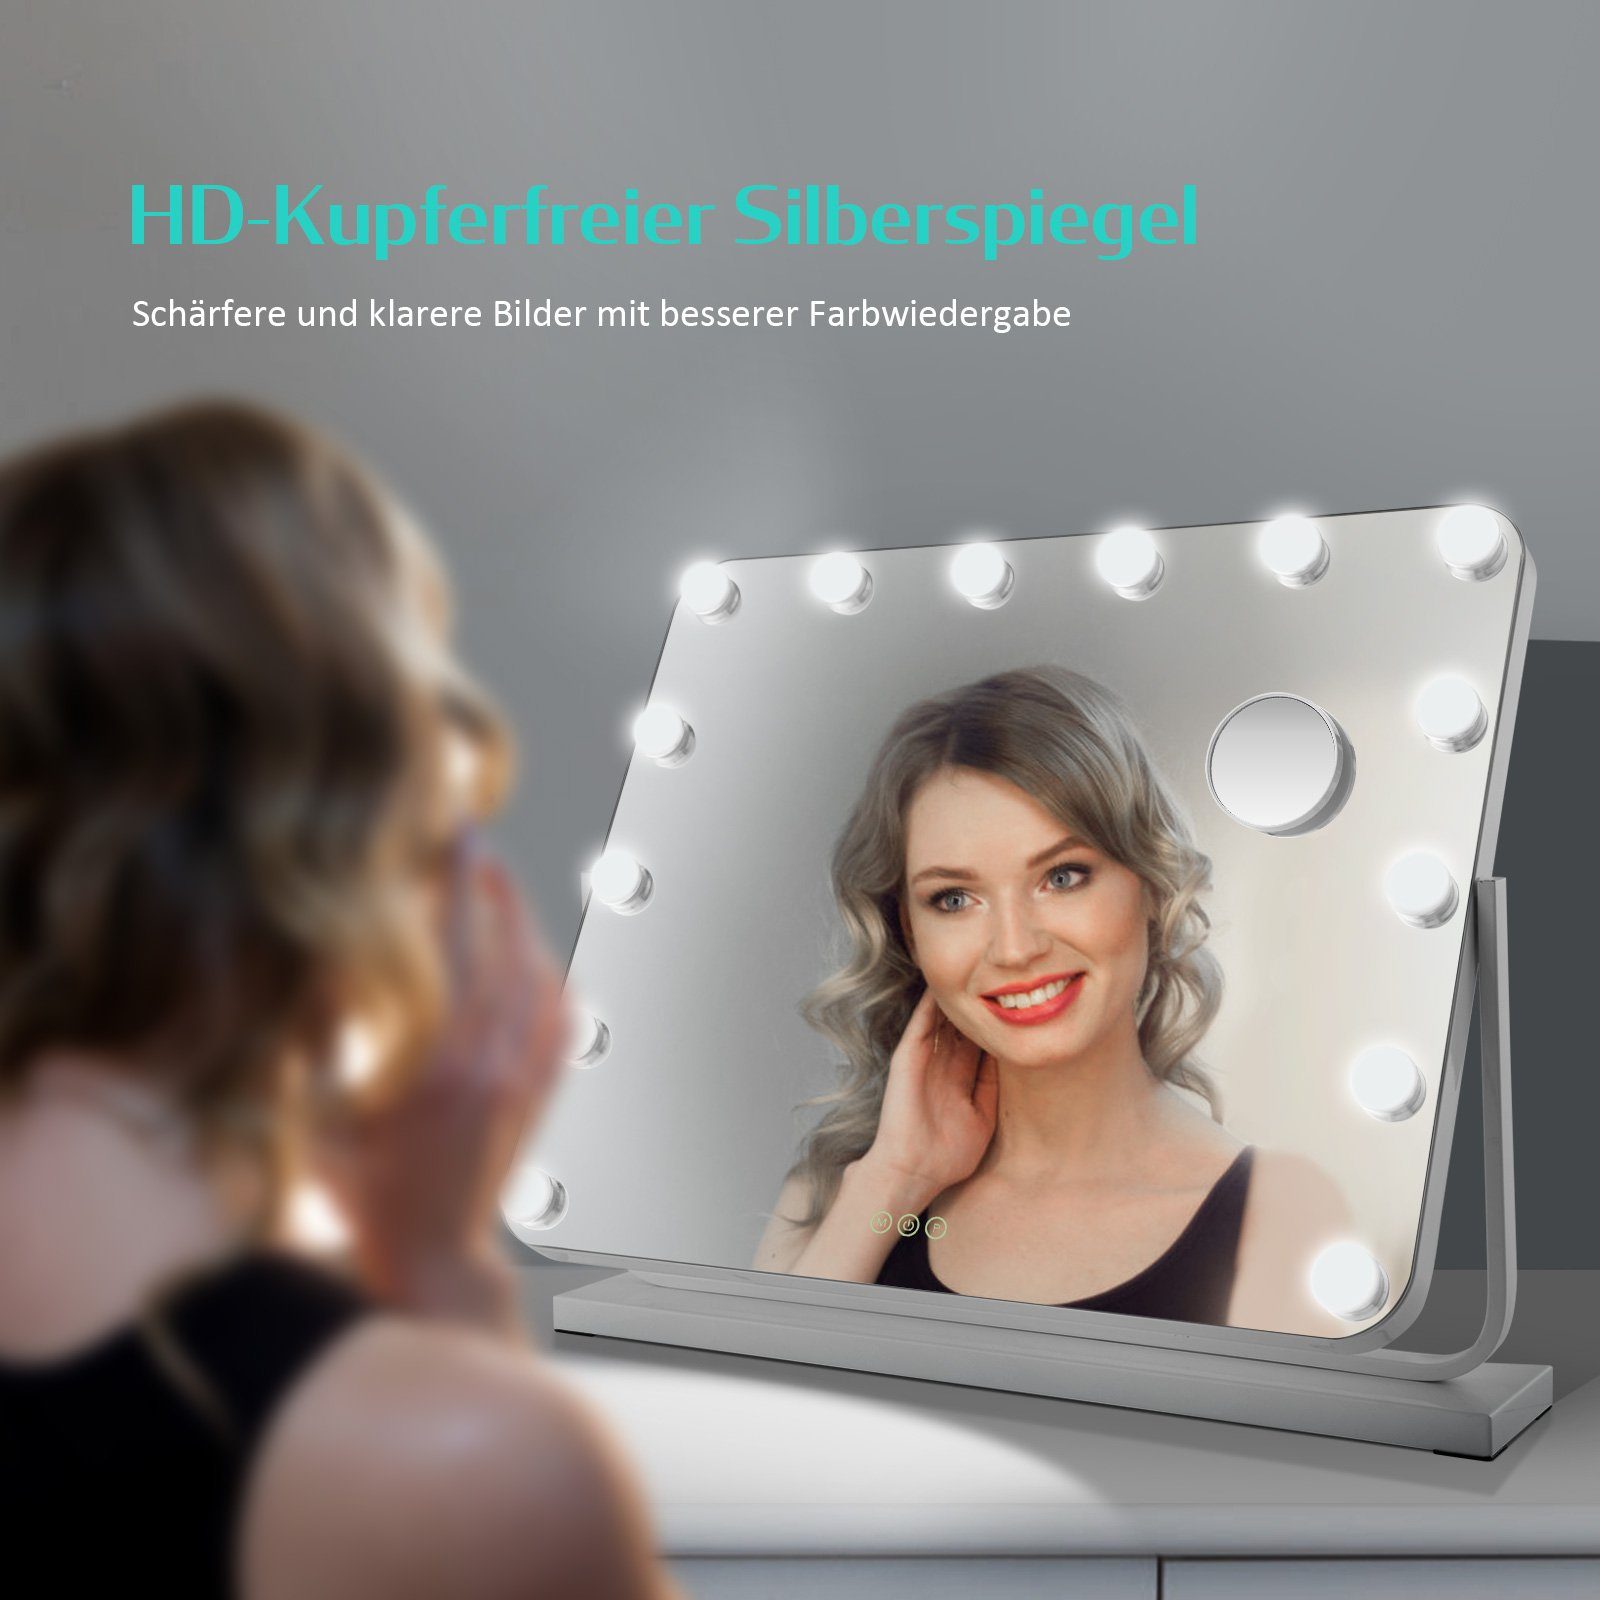 EMKE Kosmetikspiegel Hollywood Spiegel mit x Tischspiegel, ° Vergrößerungsspiegel Weiß 3 Beleuchtung Drehbar Licht,Dimmbar,Speicherfunktion,7 360 Farbe